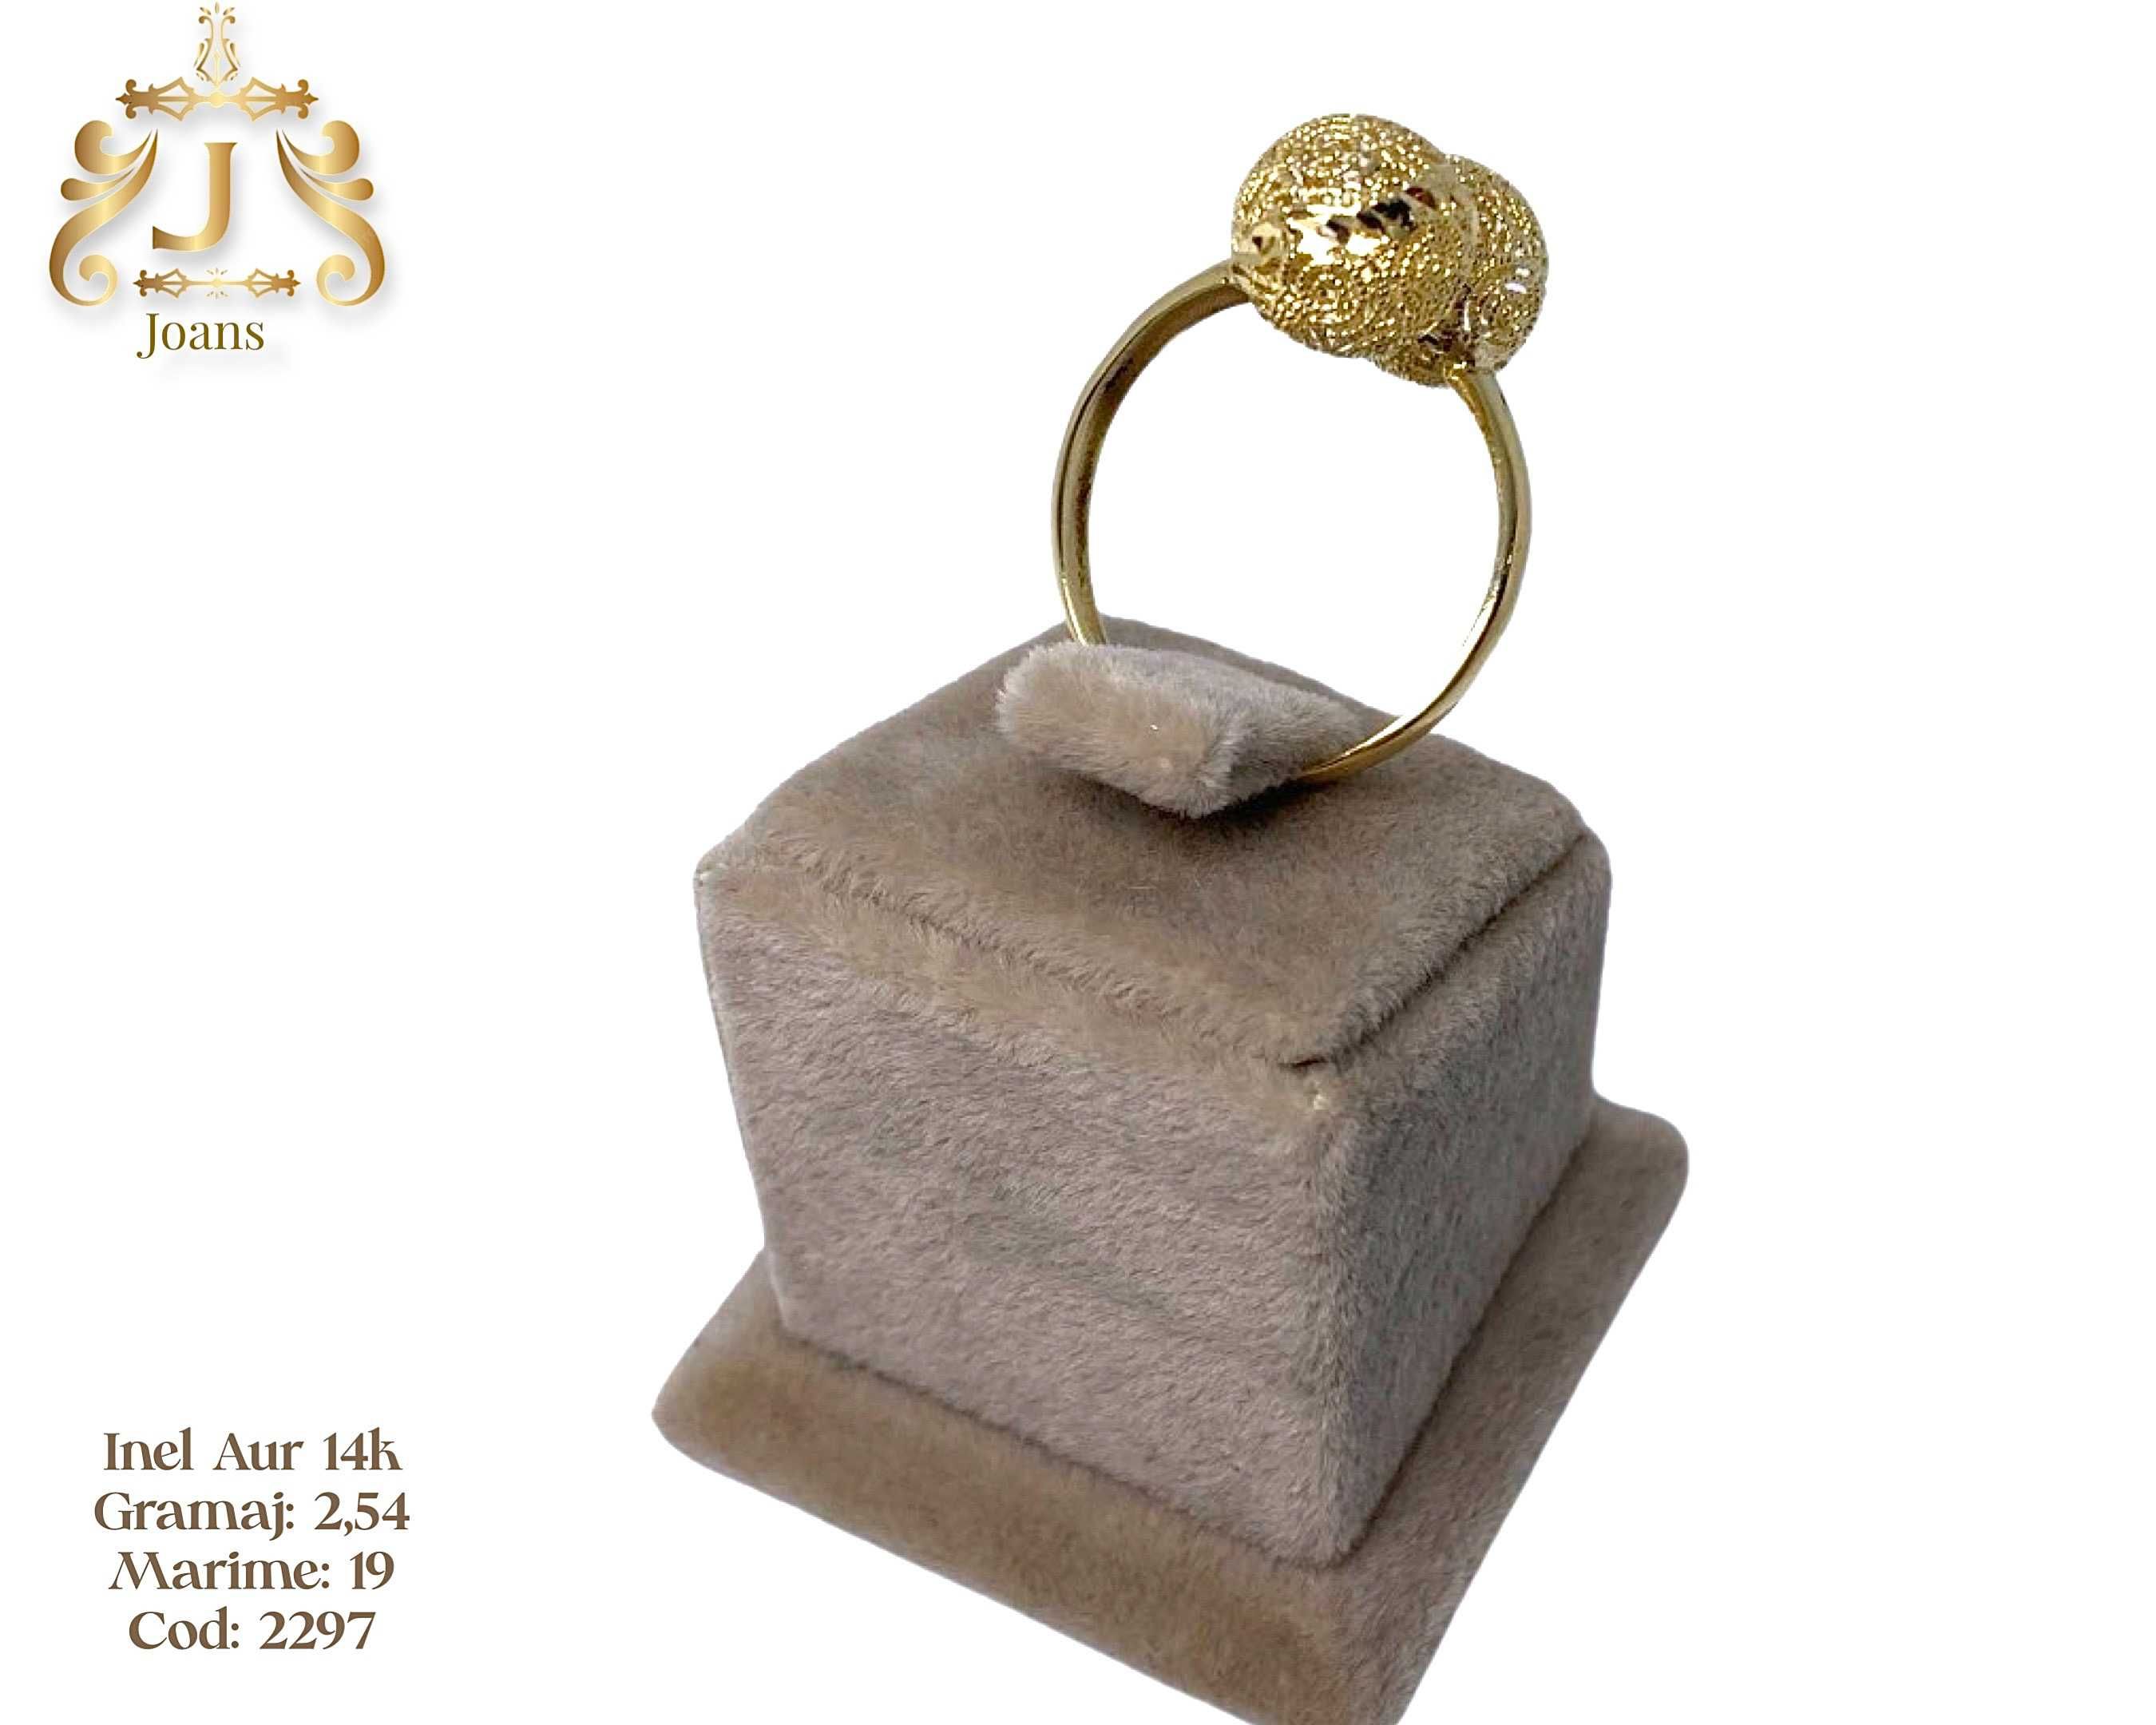 (2297) Inel Aur 14k 2,54g FB Bijoux Euro Gold